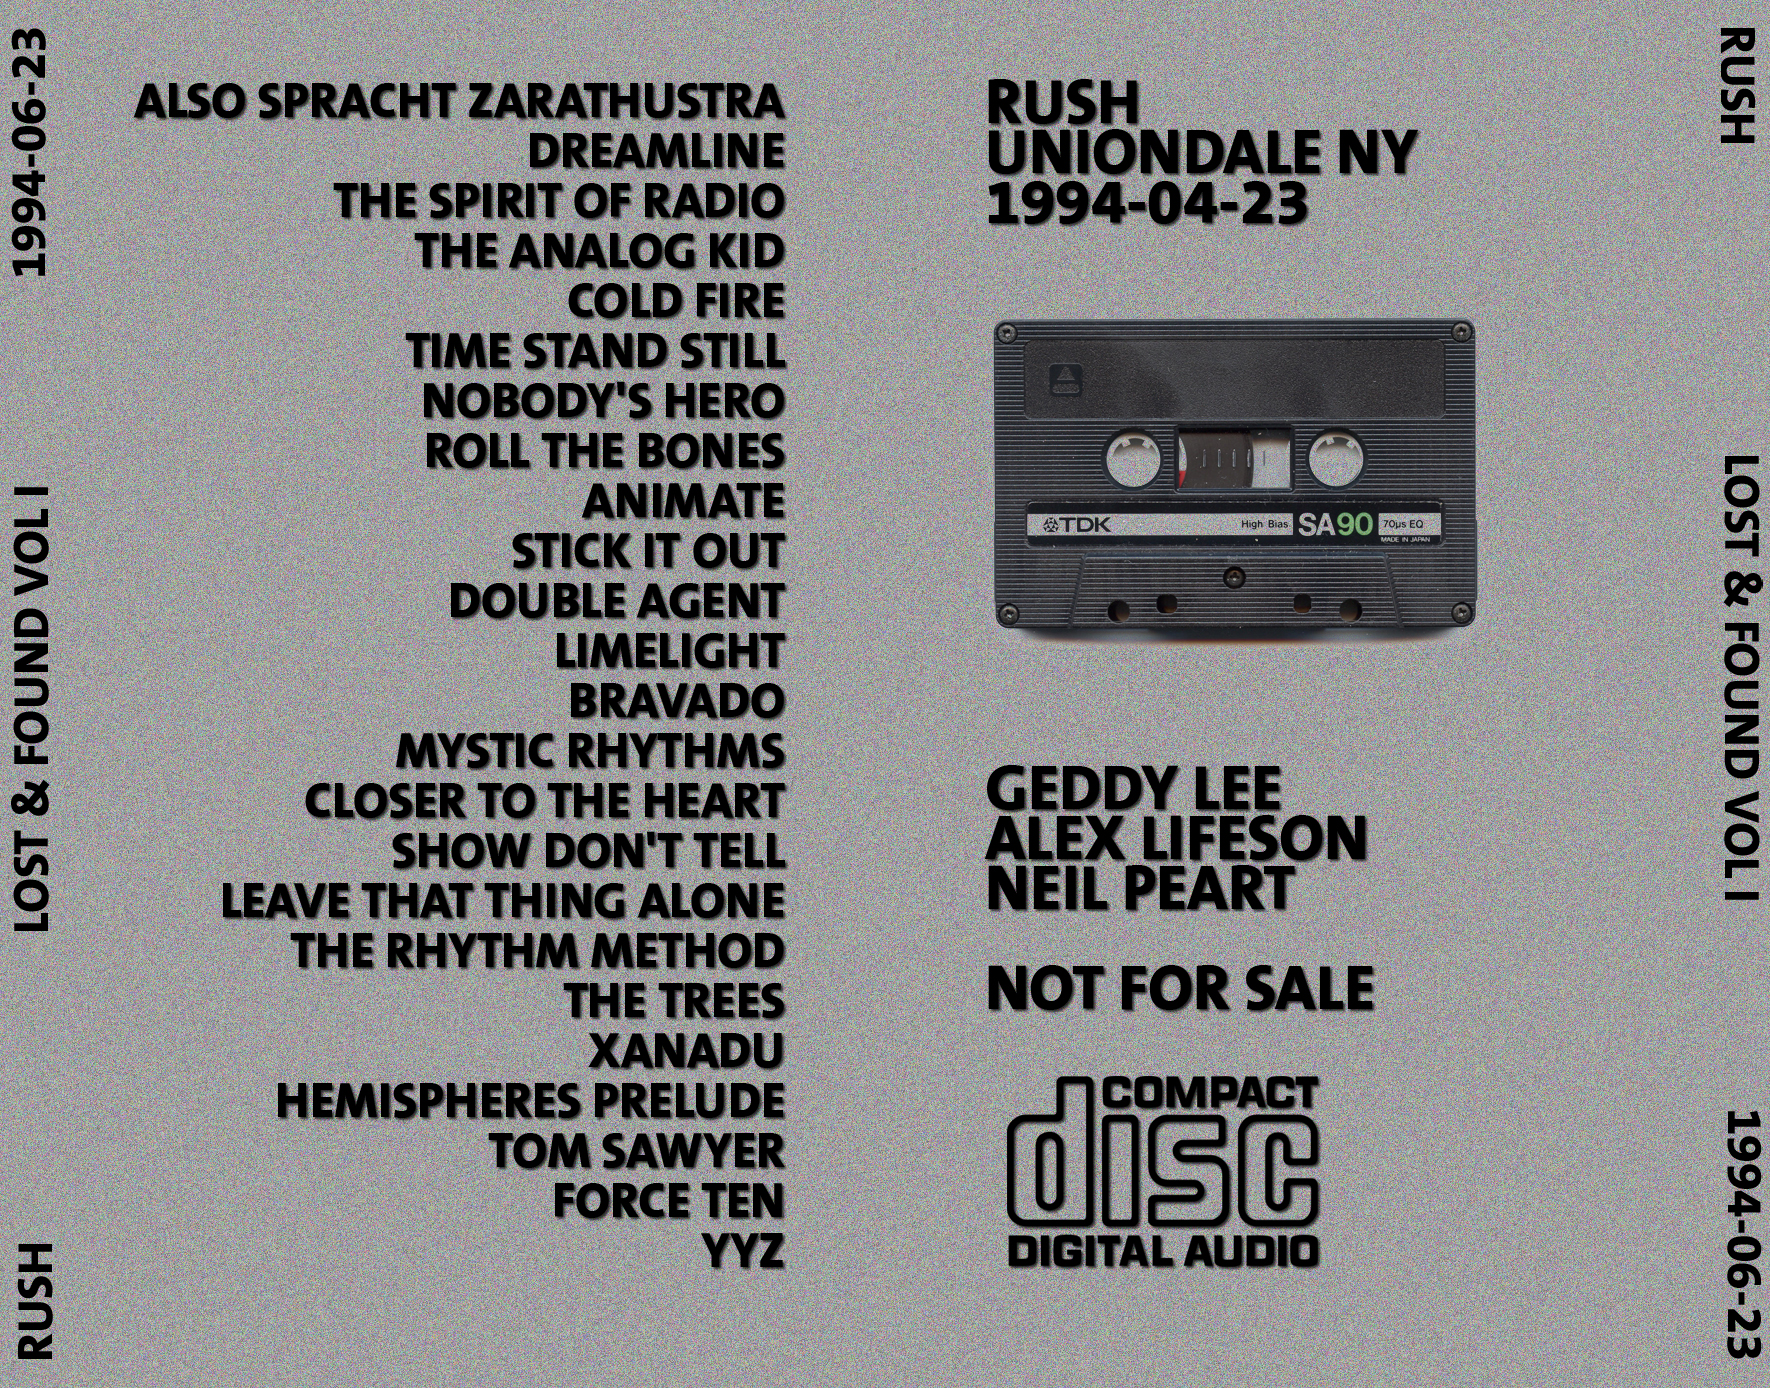 Rush1994-04-23NassauColiseumUniondaleNY (5).jpg